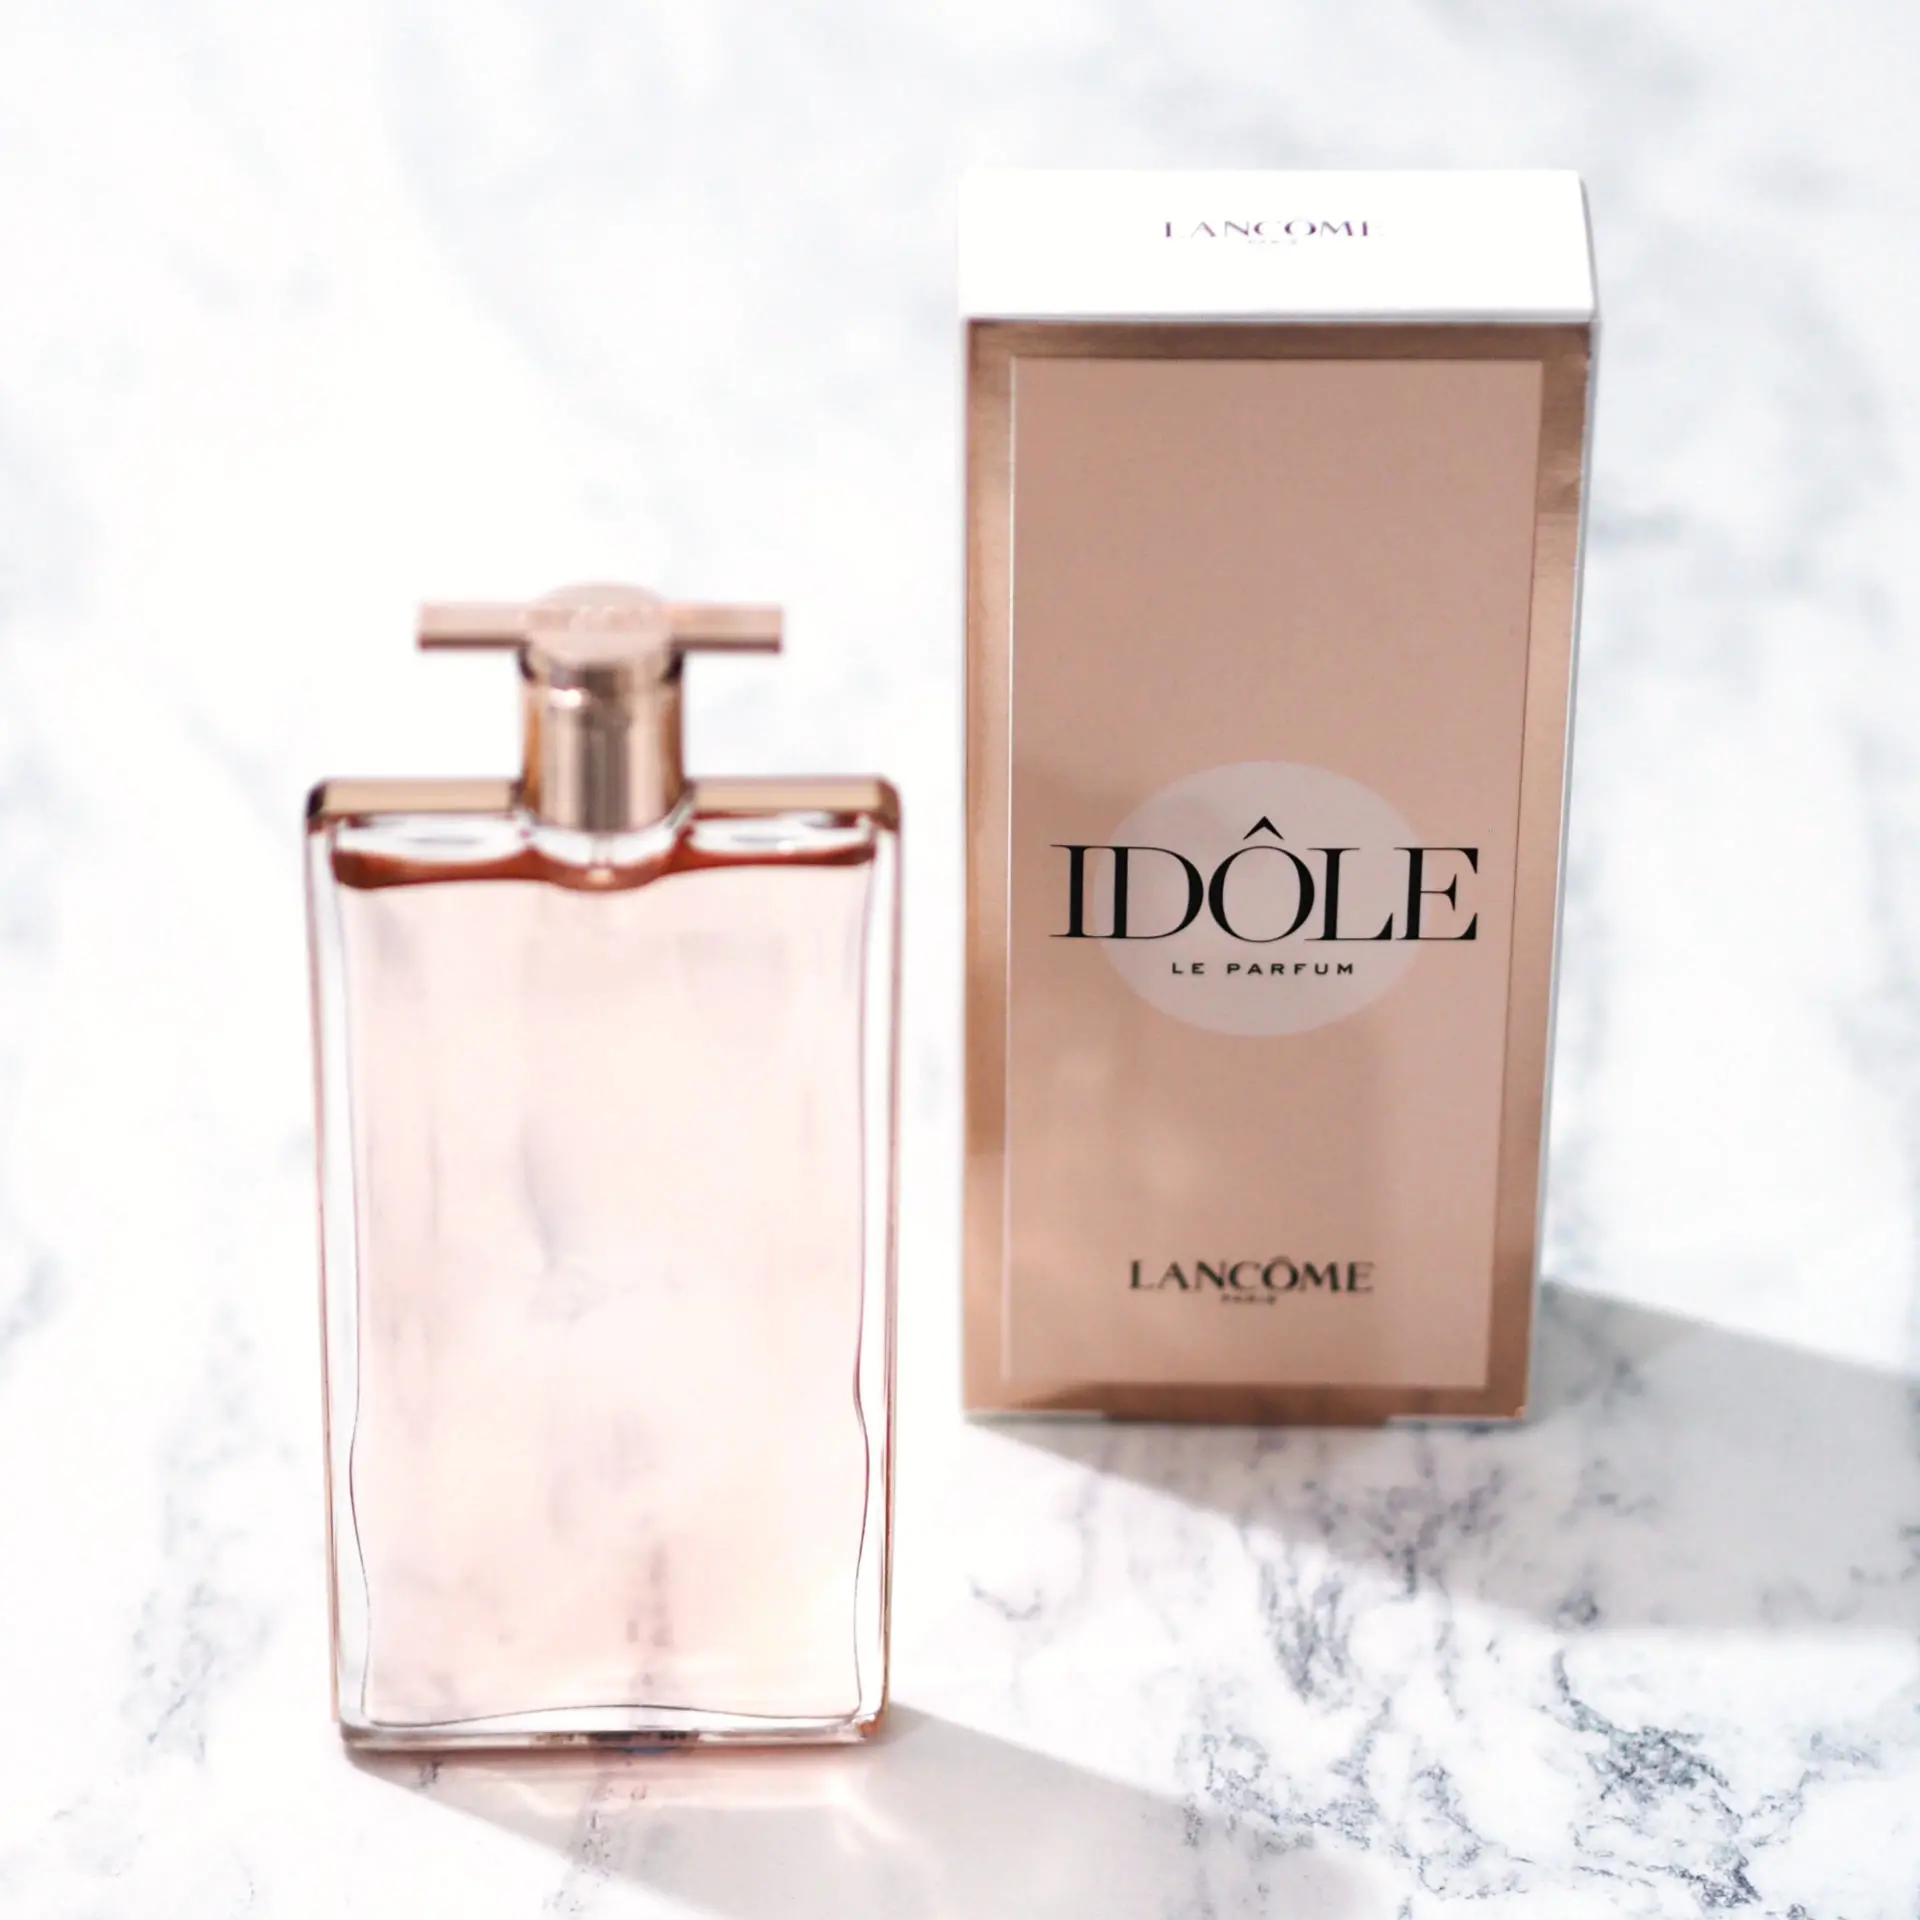 интернет магазин парфюмерии Parfum отзывы